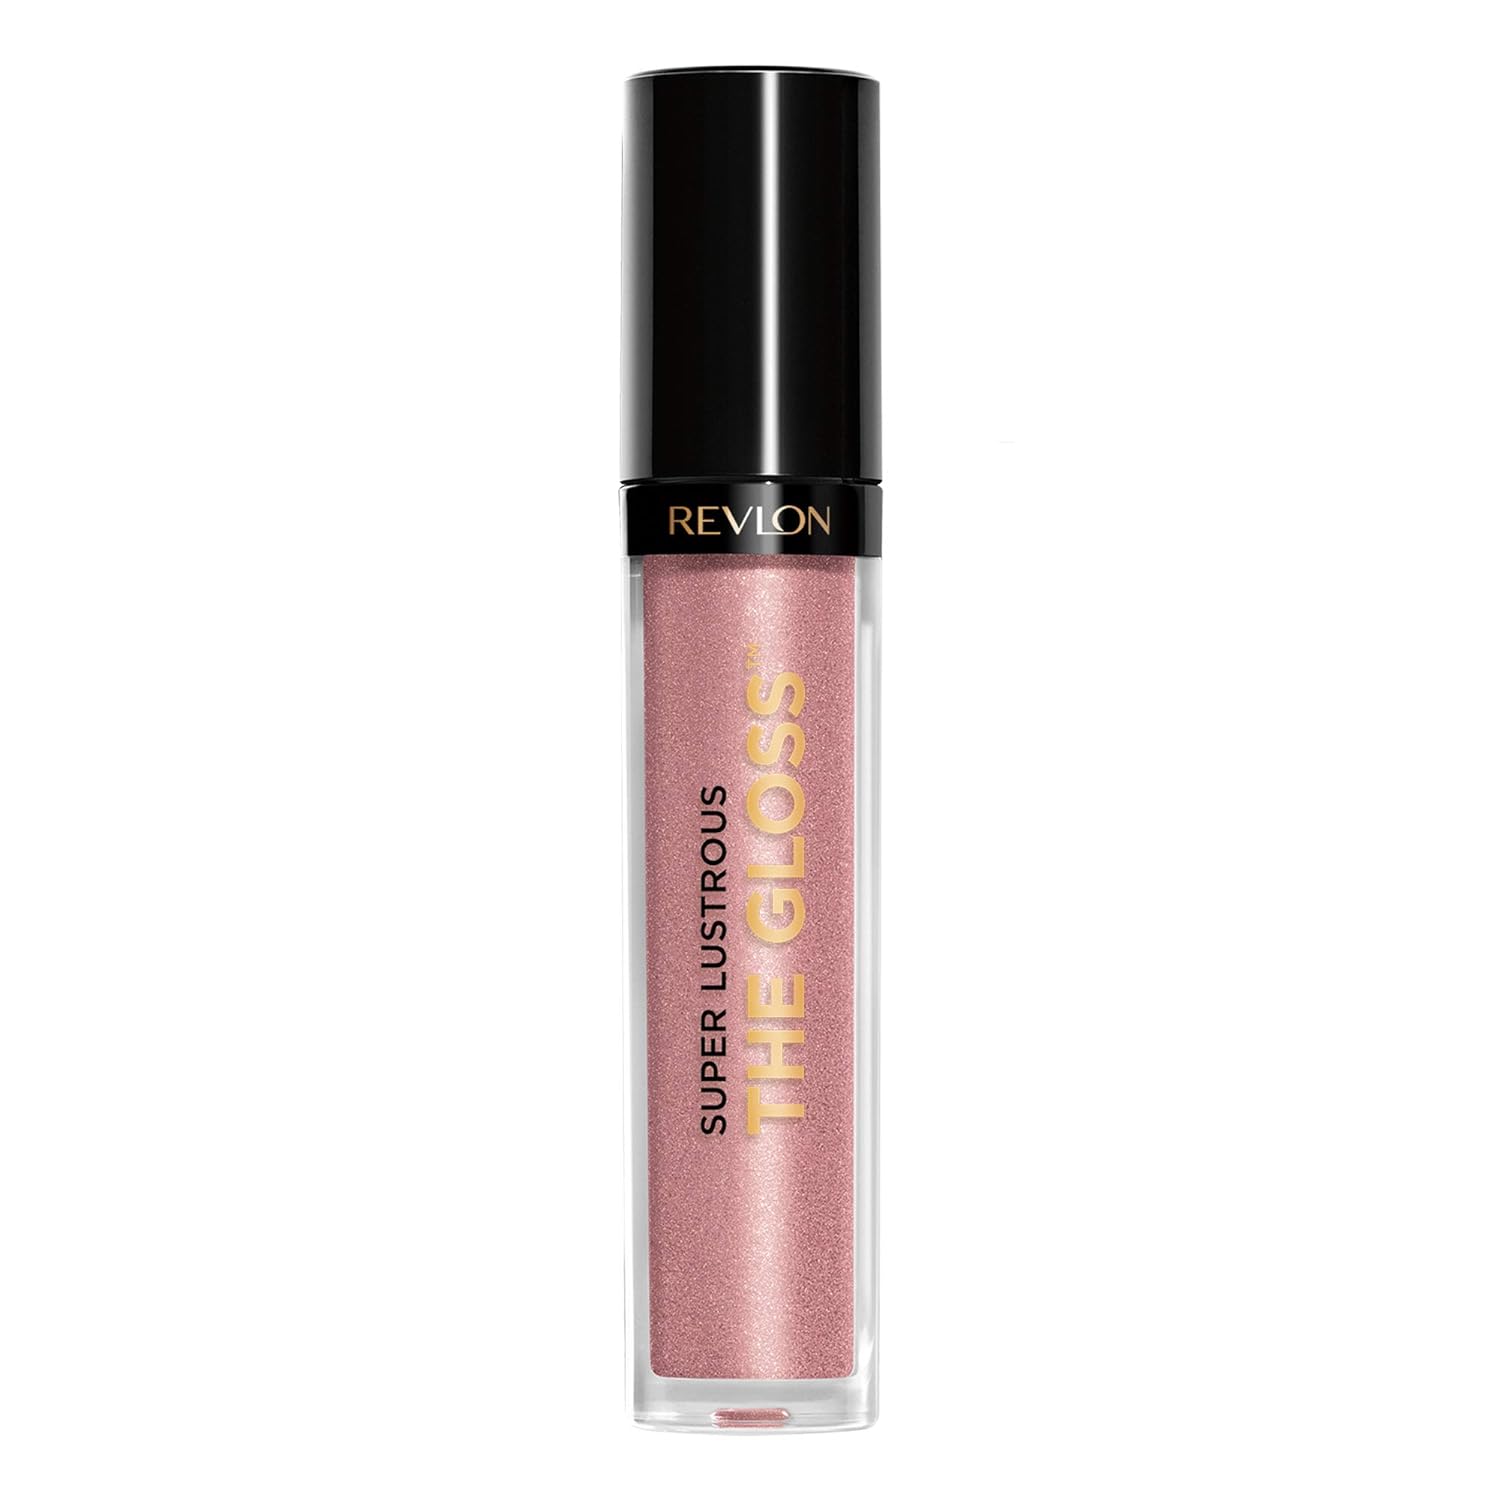 Super glänzender The Gloss Lipgloss 3,8 ml